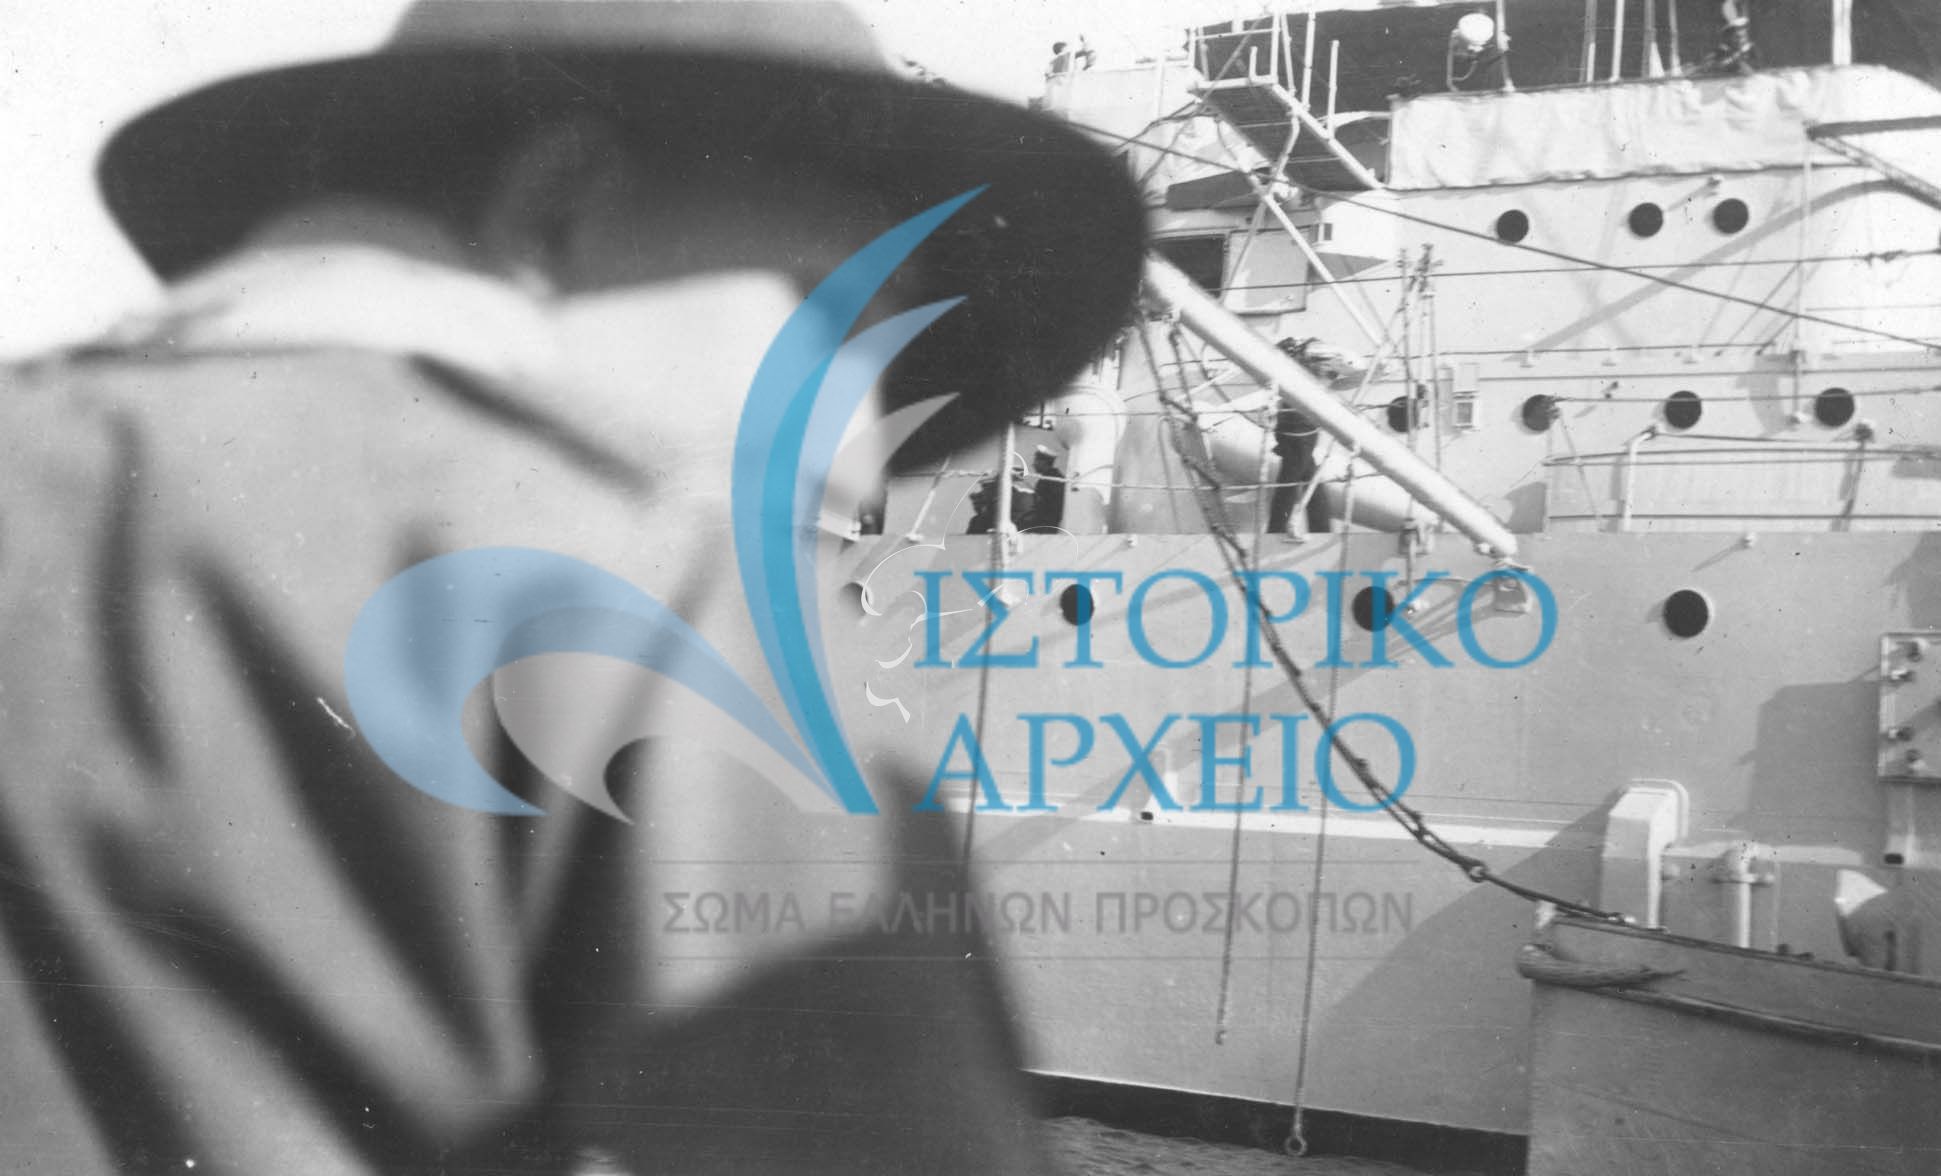 Η 2η Ομάδα προσκόπων Κέρκυρας σε εκδρομή σε επίσκεψη στον Ελληνικό στόλο στις 10 Μαίου του  1929